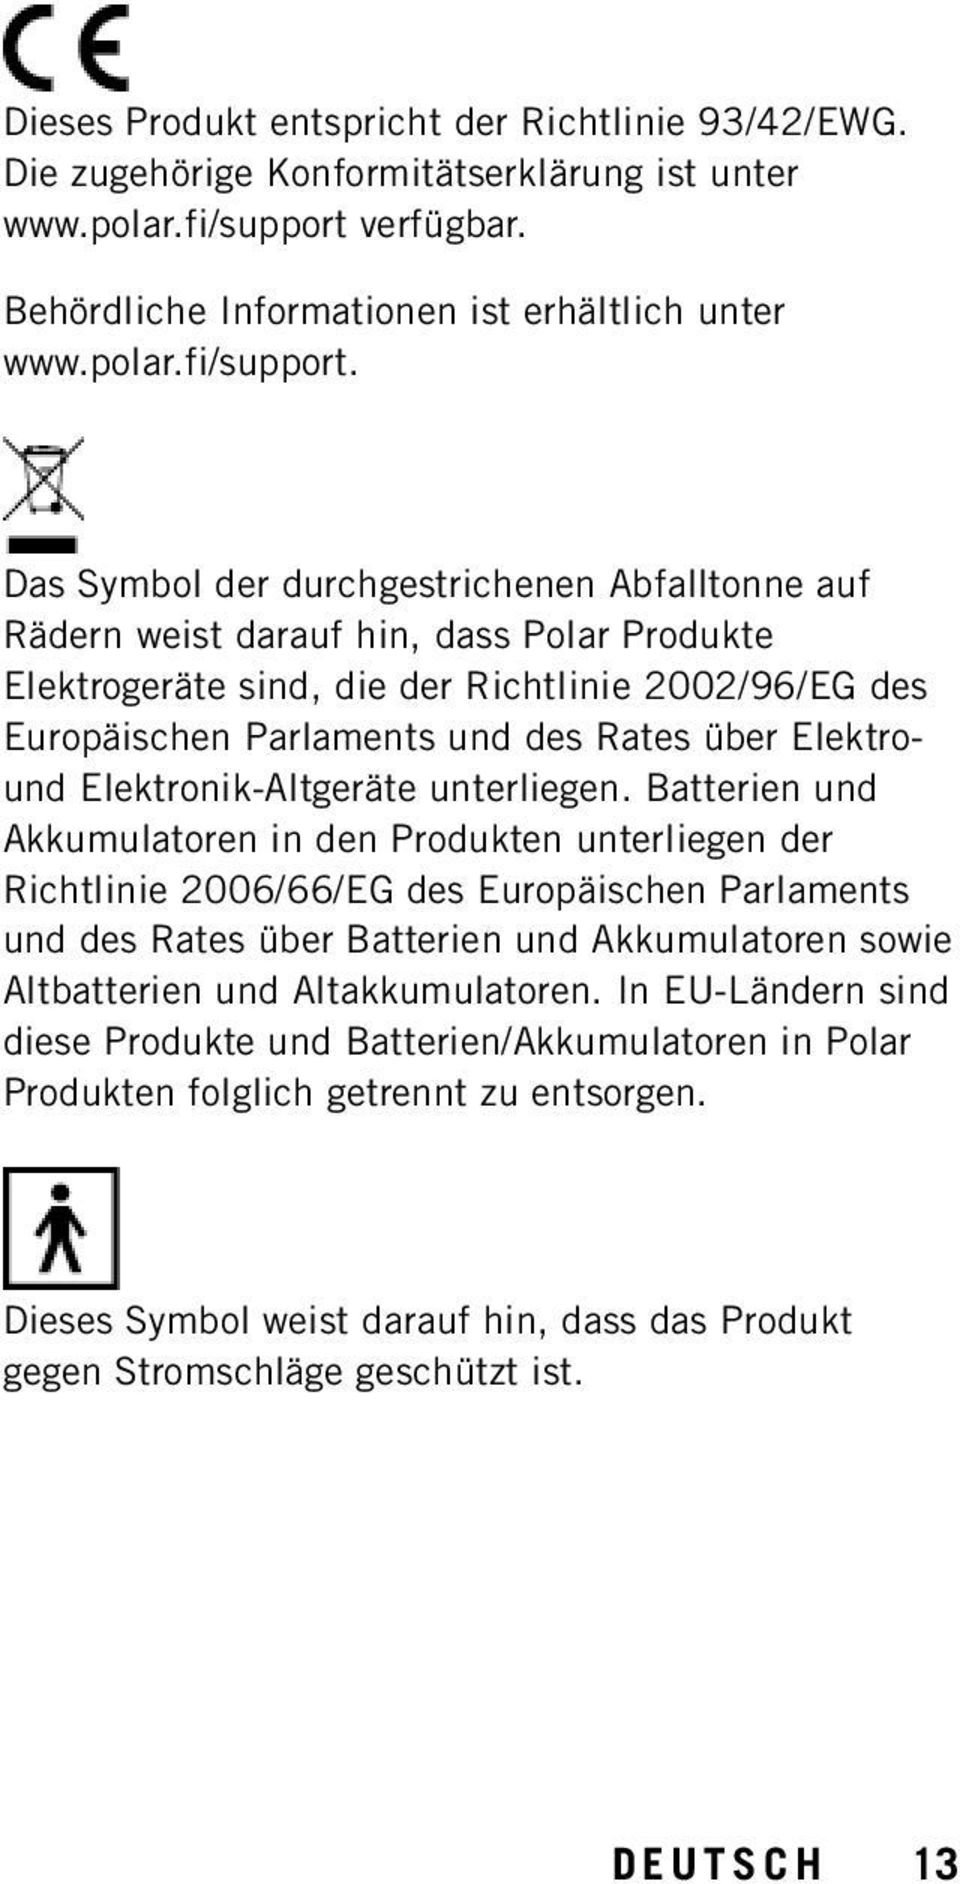 Das Symbol der durchgestrichenen Abfalltonne auf Rädern weist darauf hin, dass Polar Produkte Elektrogeräte sind, die der Richtlinie 2002/96/EG des Europäischen Parlaments und des Rates über